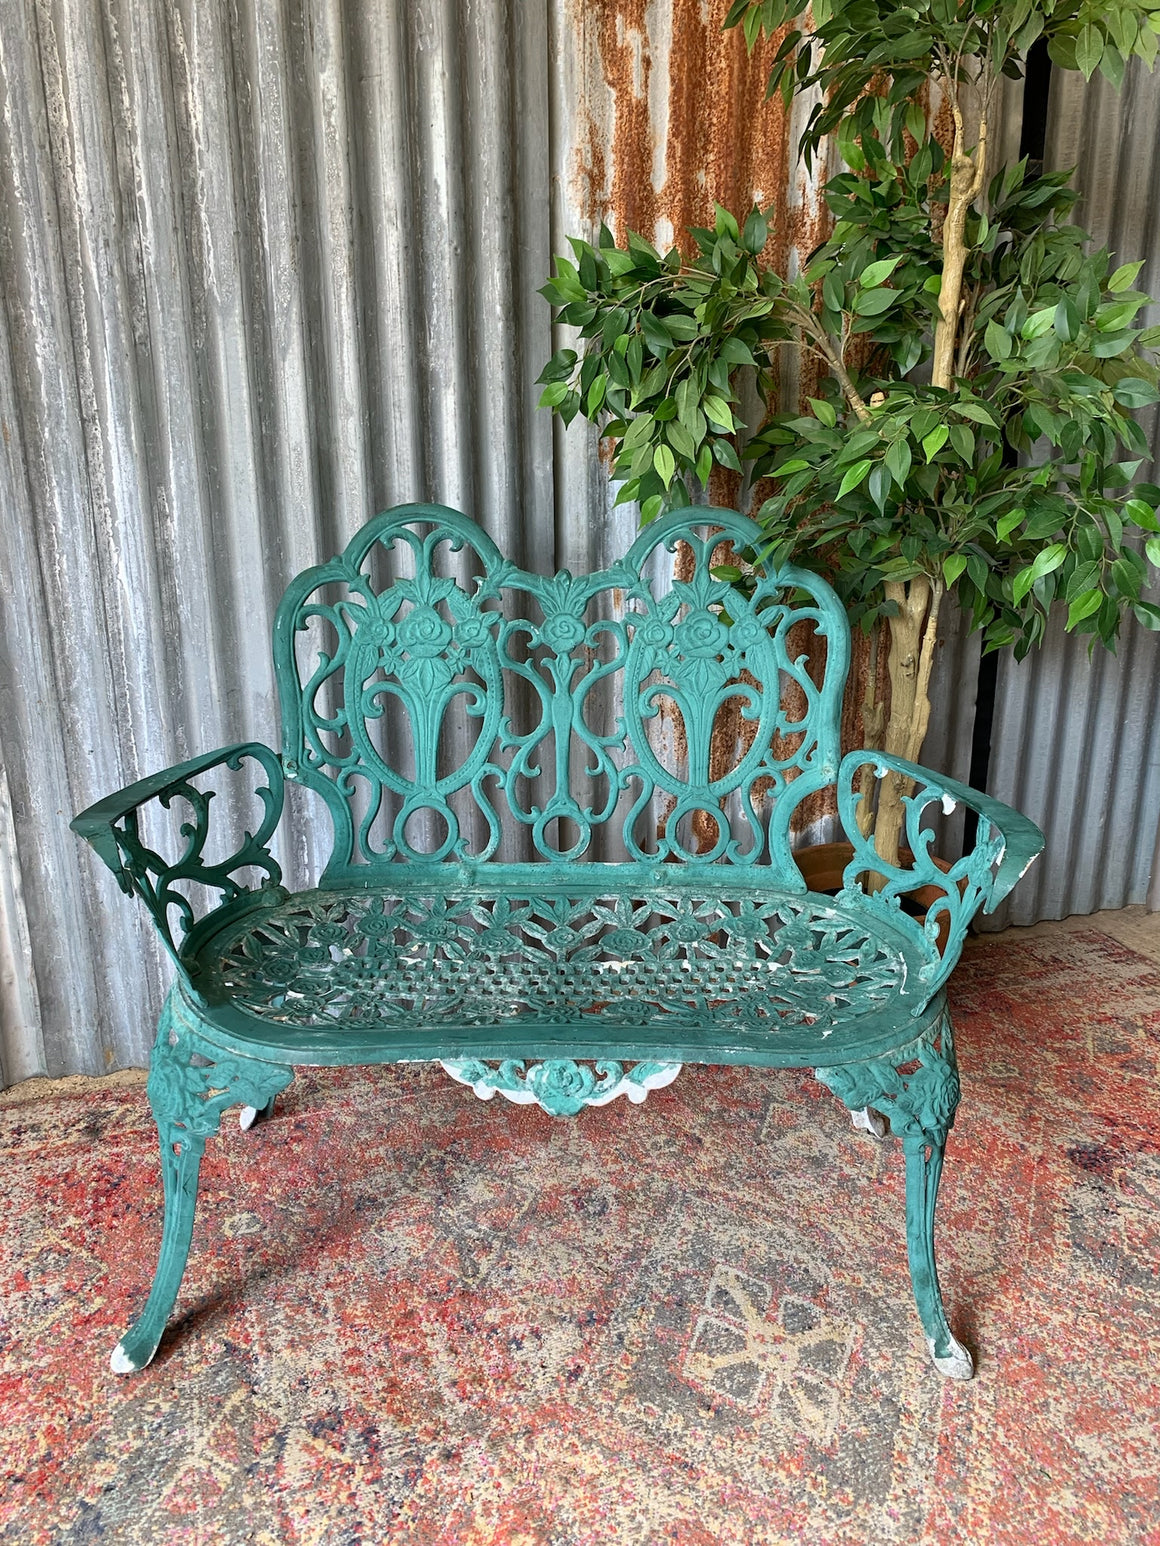 A green cast metal rose motif garden bench